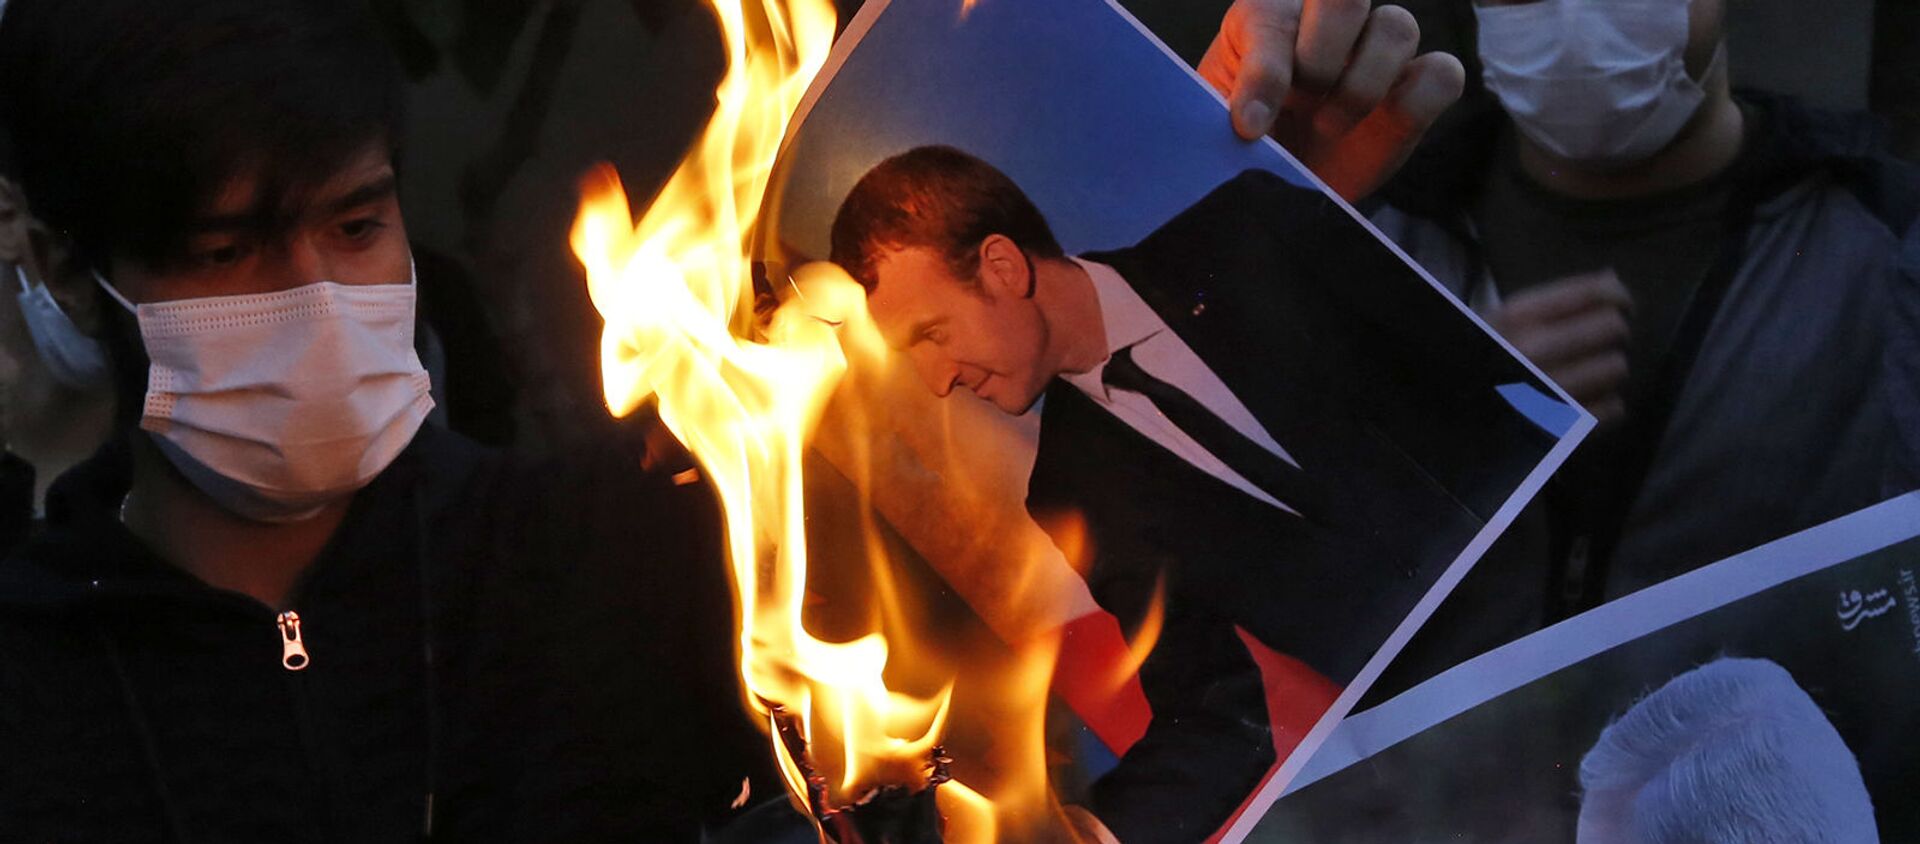 Сжигание фотографии президента Франции Эммануэля Макрона в Тегеране - Sputnik Таджикистан, 1920, 29.10.2020